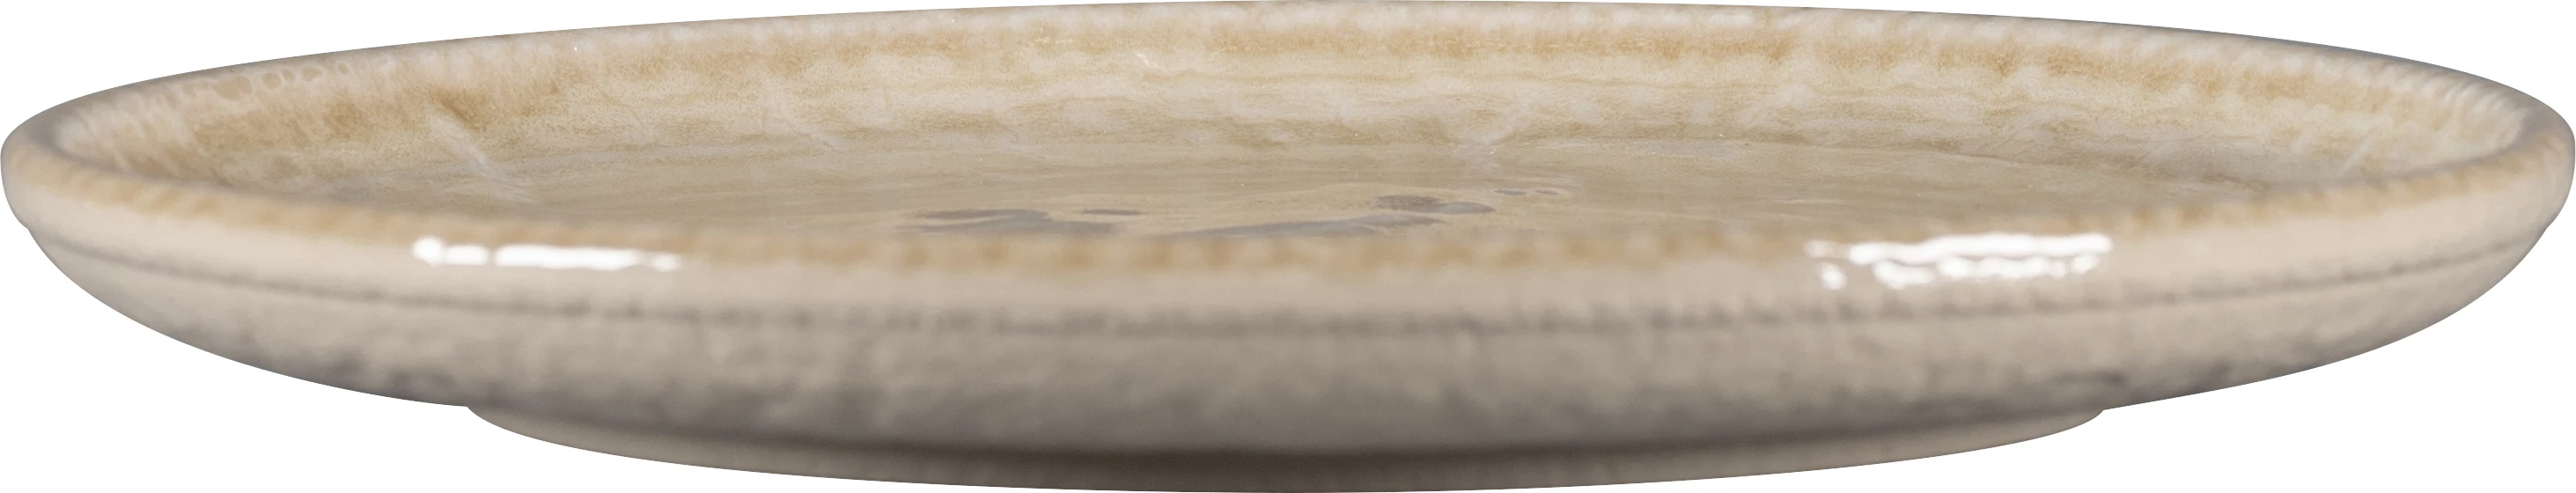 RAK Krush flad tallerken uden fane, sand, ø20,9 cm